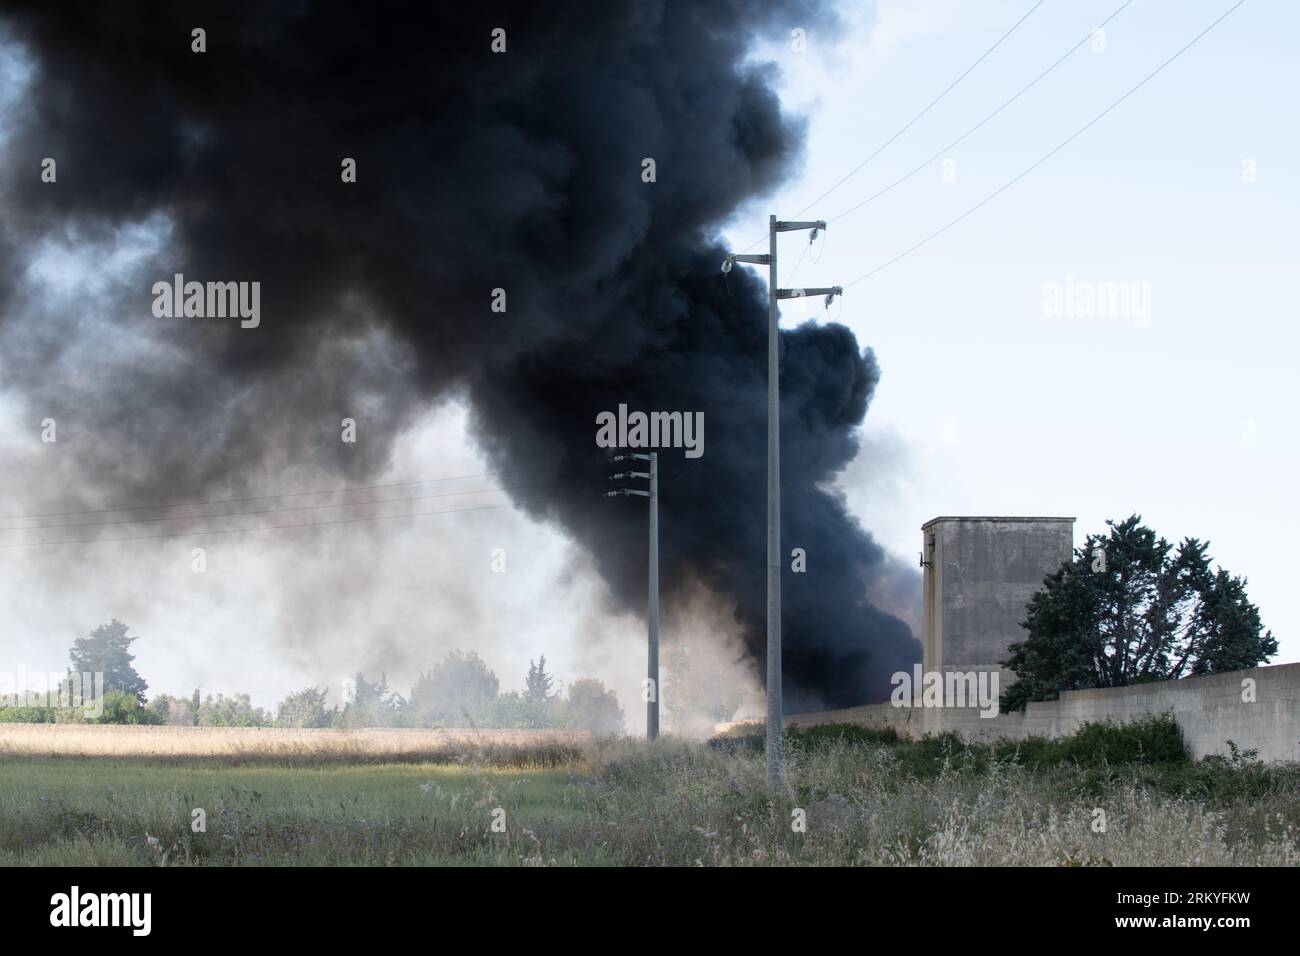 Provinz Lecce: Feuerrauch in einem Autolager Stockfoto